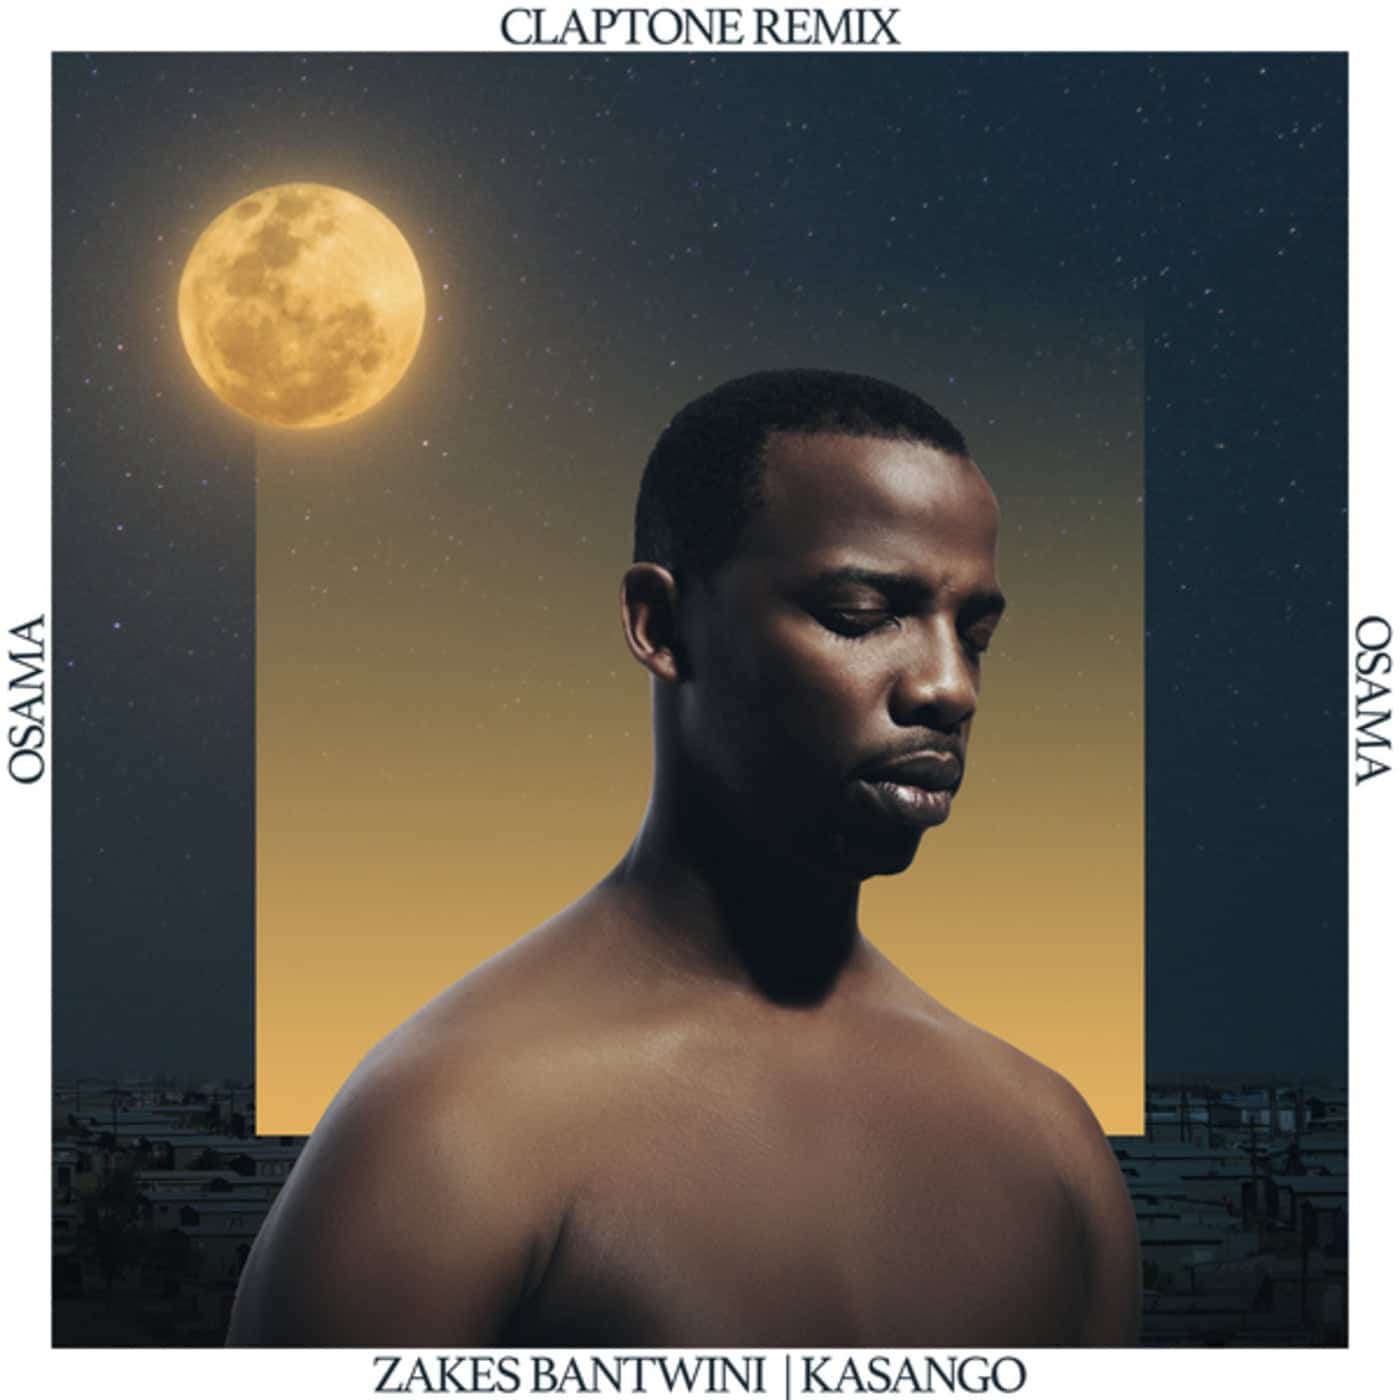 image cover: Osama (Claptone Remix) by Zakes Bantwini, Claptone, Kasango on Universal Music (Pty) Ltd.